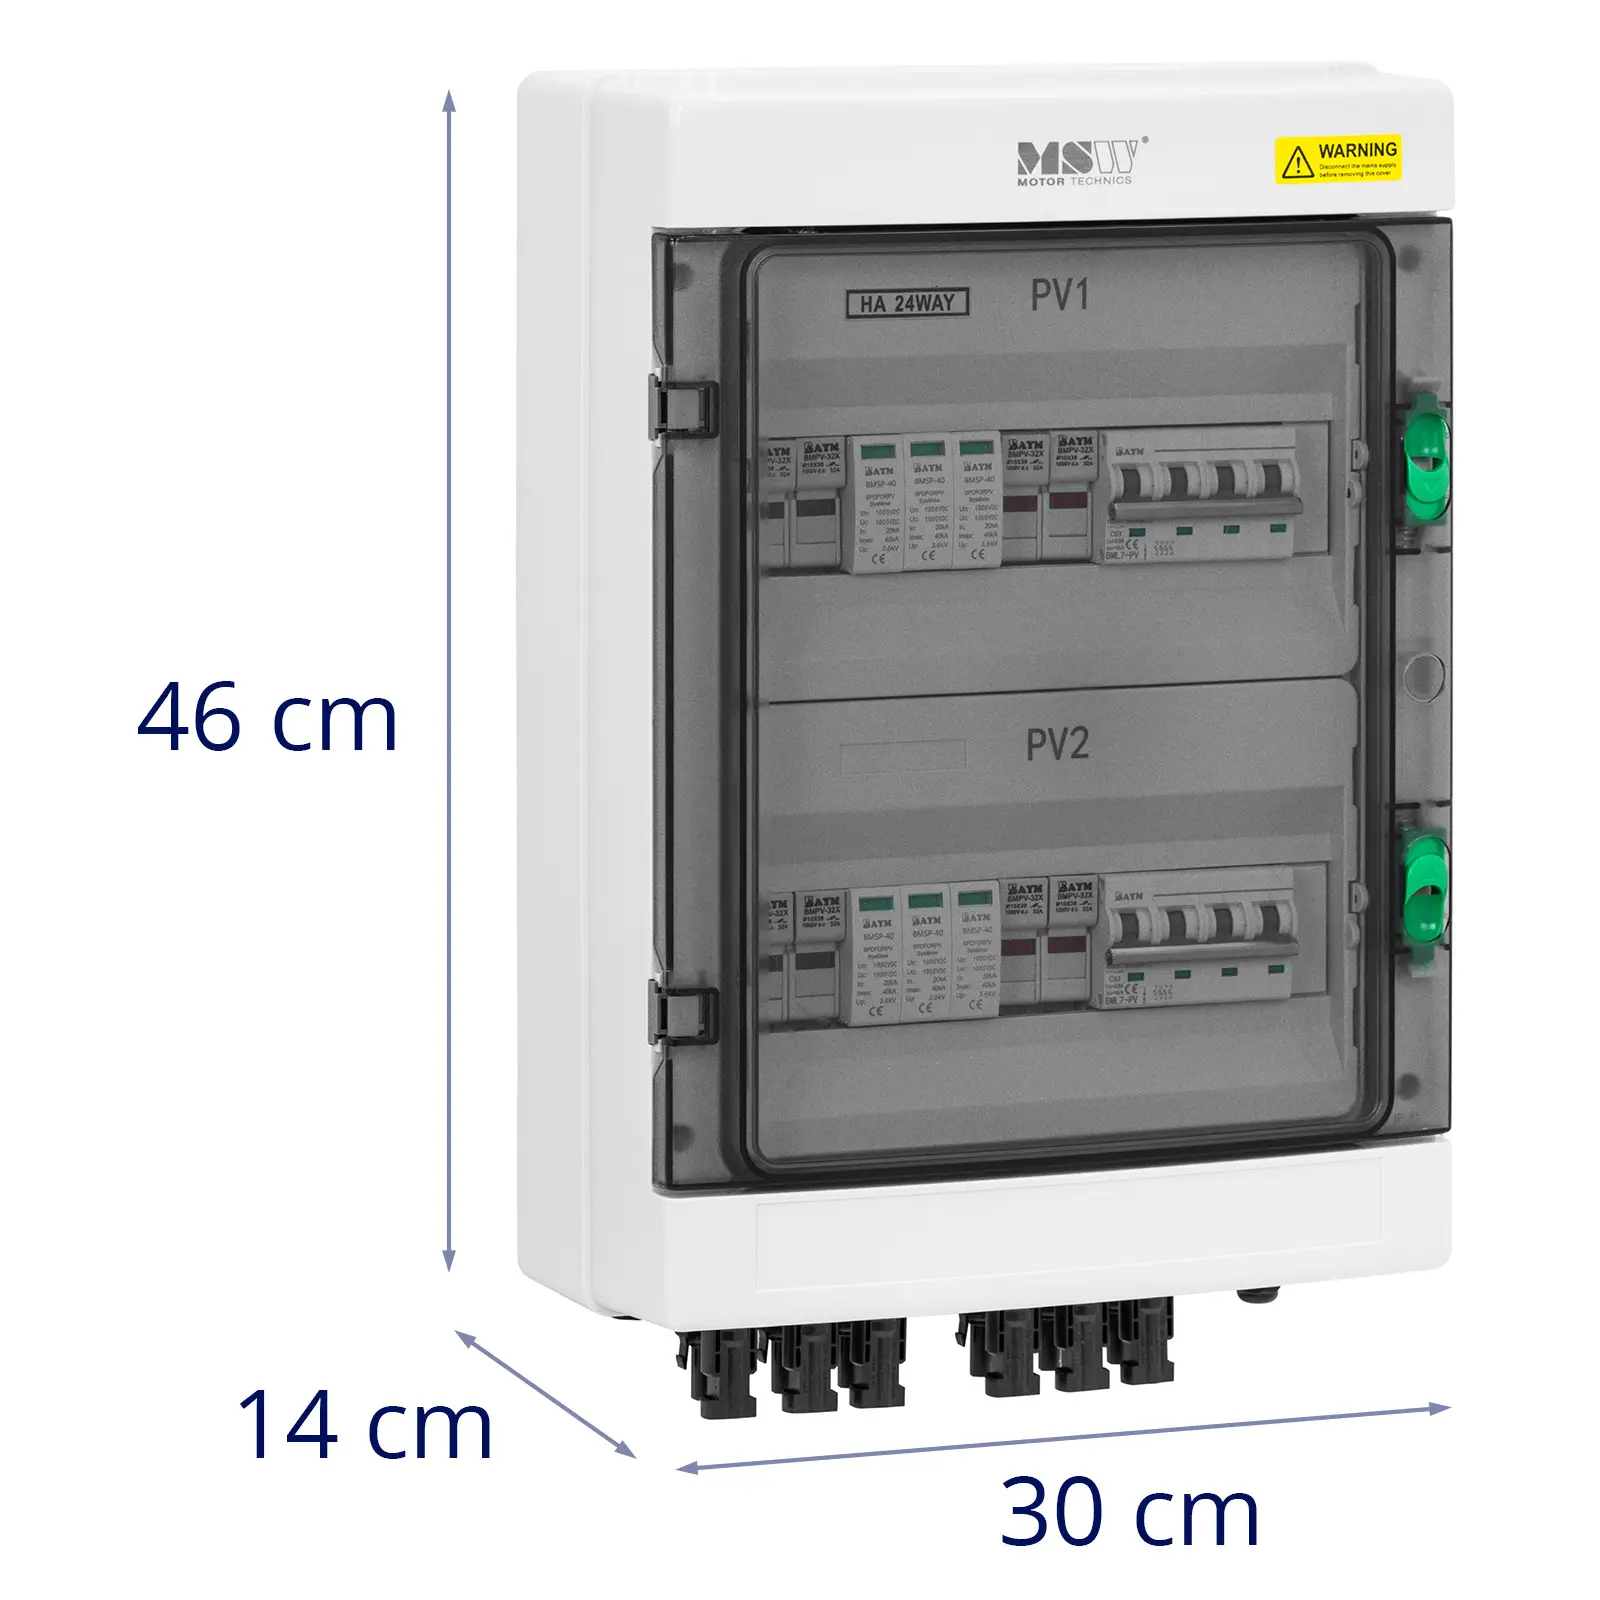 Caixa de derivação com proteção contra sobretensão para sistema fotovoltaico - tipo 2 - 4 entradas / 2 saídas - 1000 V - IP65